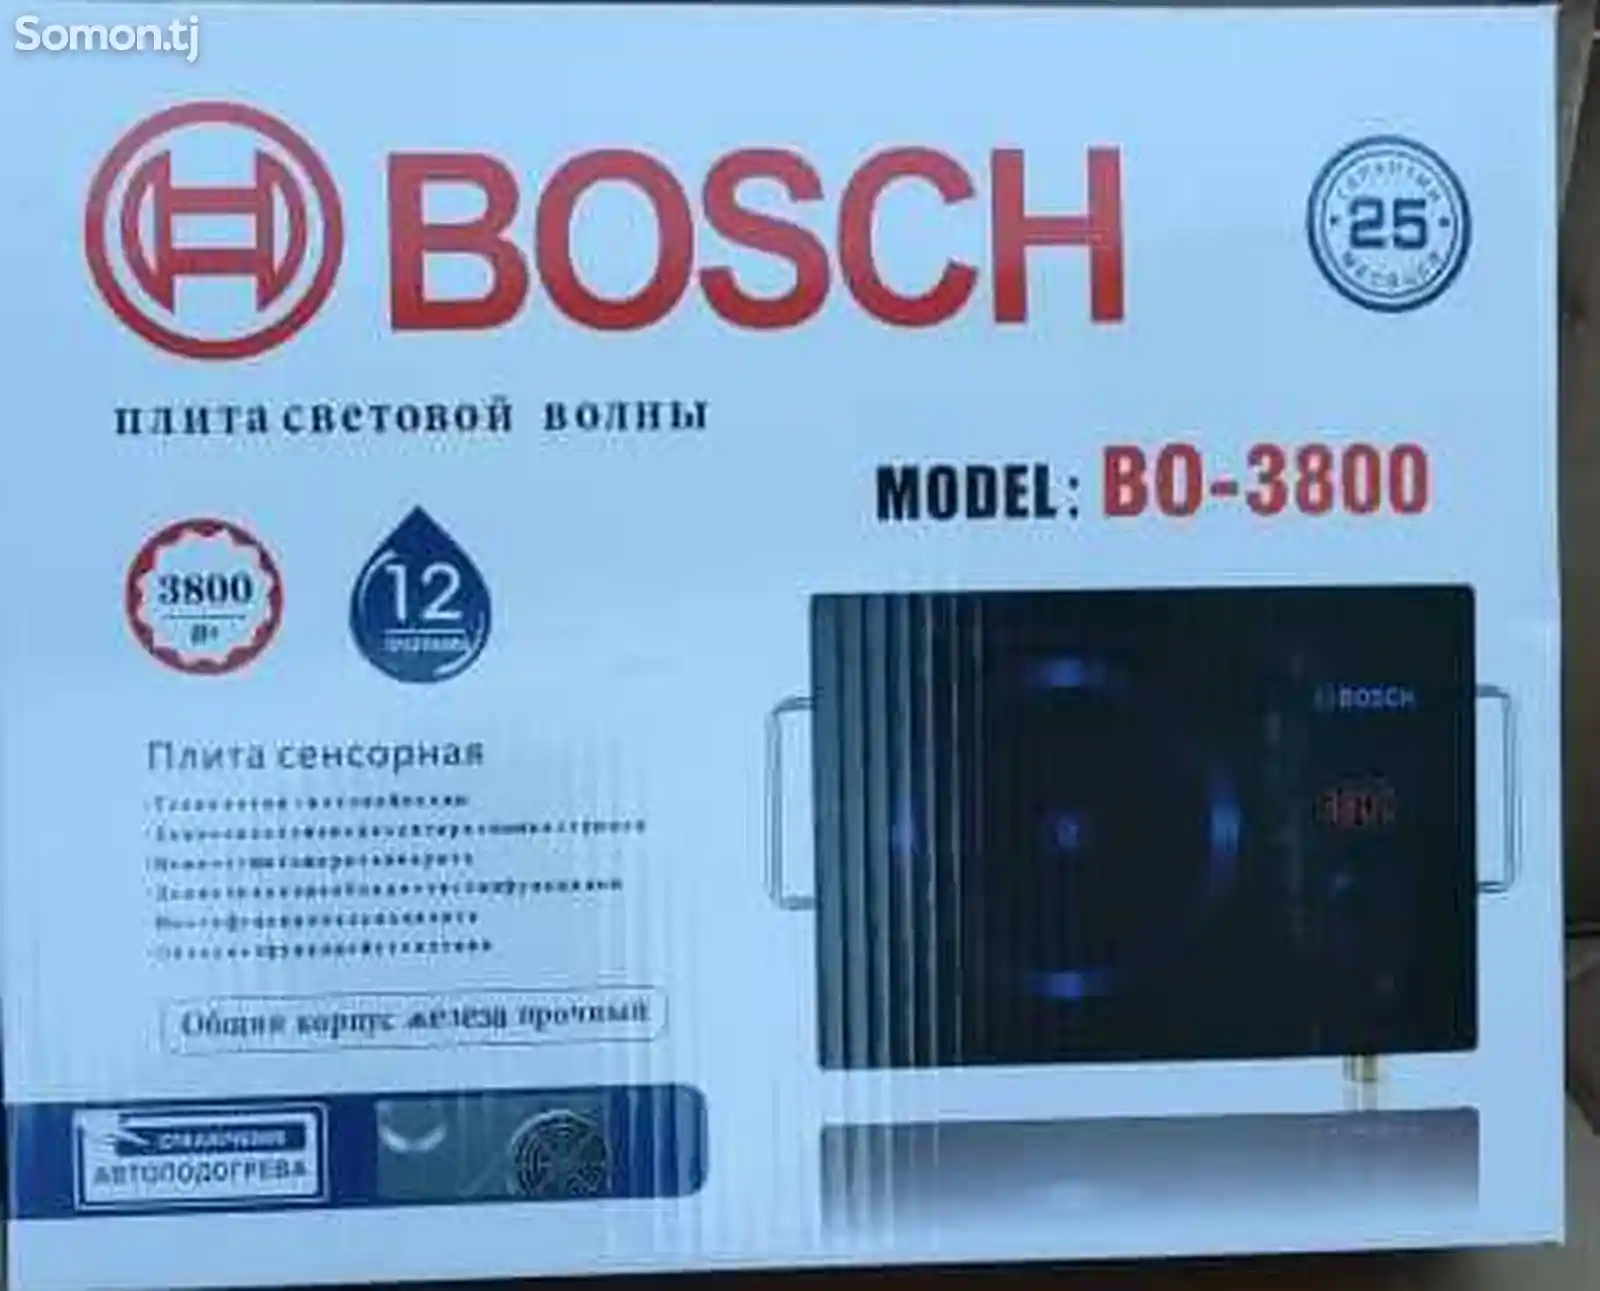 Сенсорная плита Bosch-3